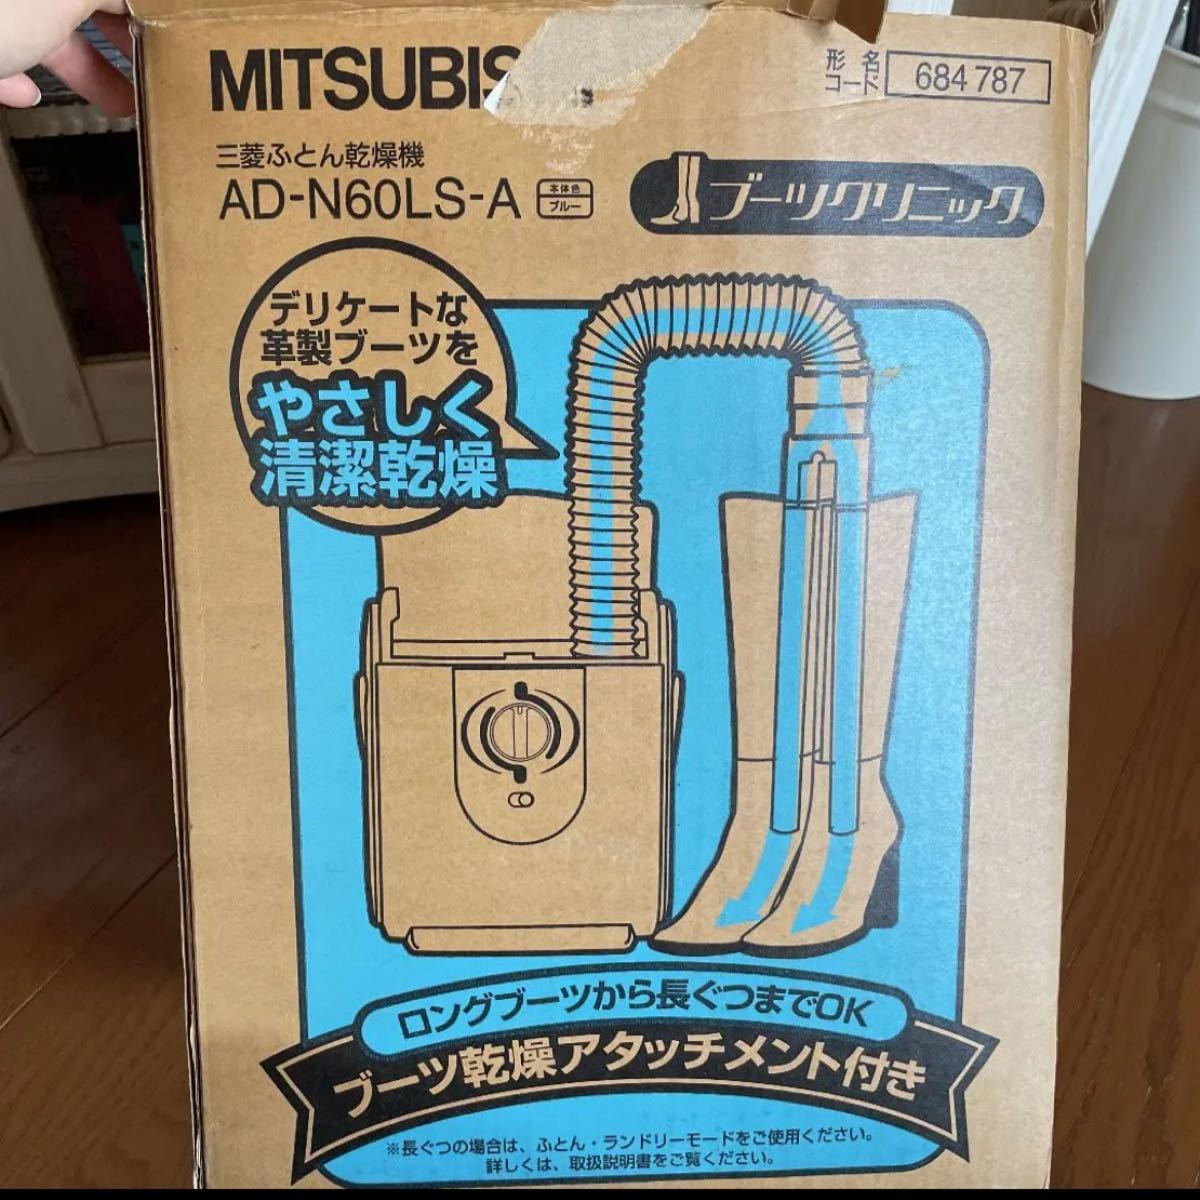 MITSUBISHI ふとん乾燥機 AD-N60LS-A ブルー - 布団乾燥機